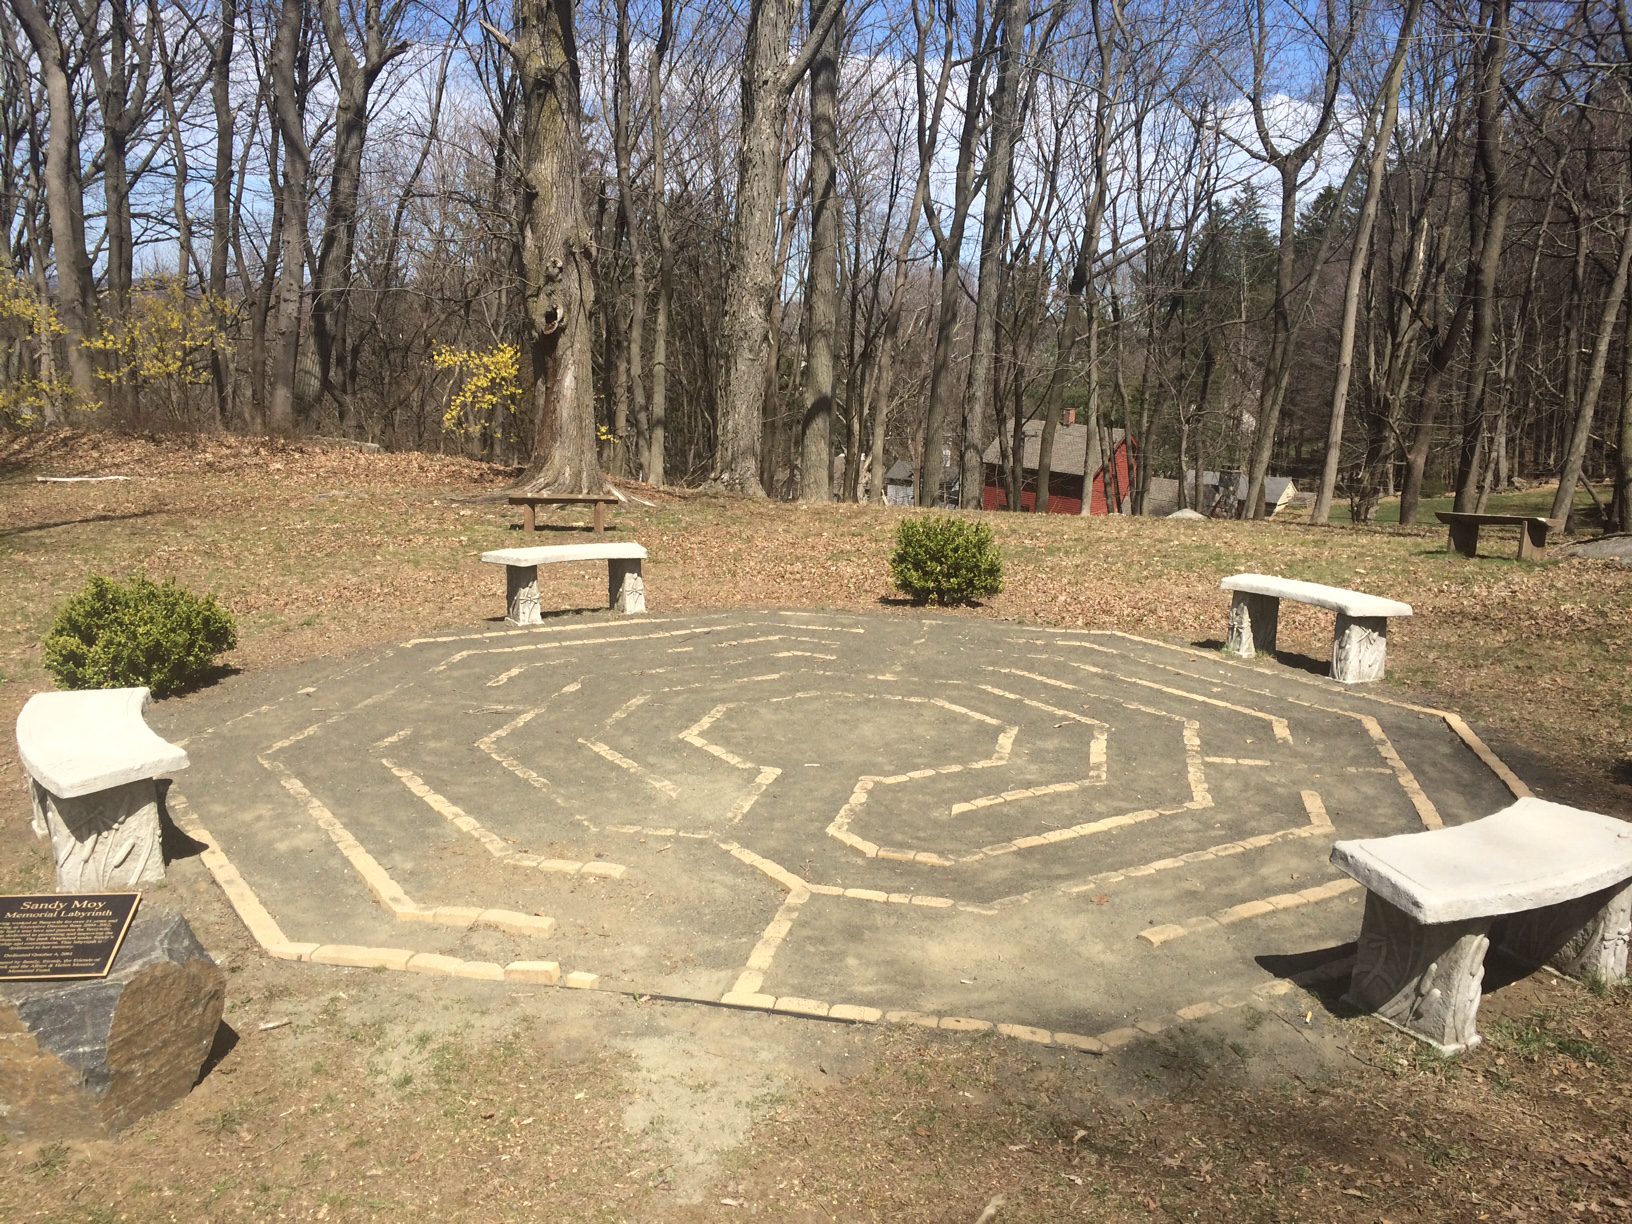 Sandy Moy Memorial Labyrinth missing a few bricks